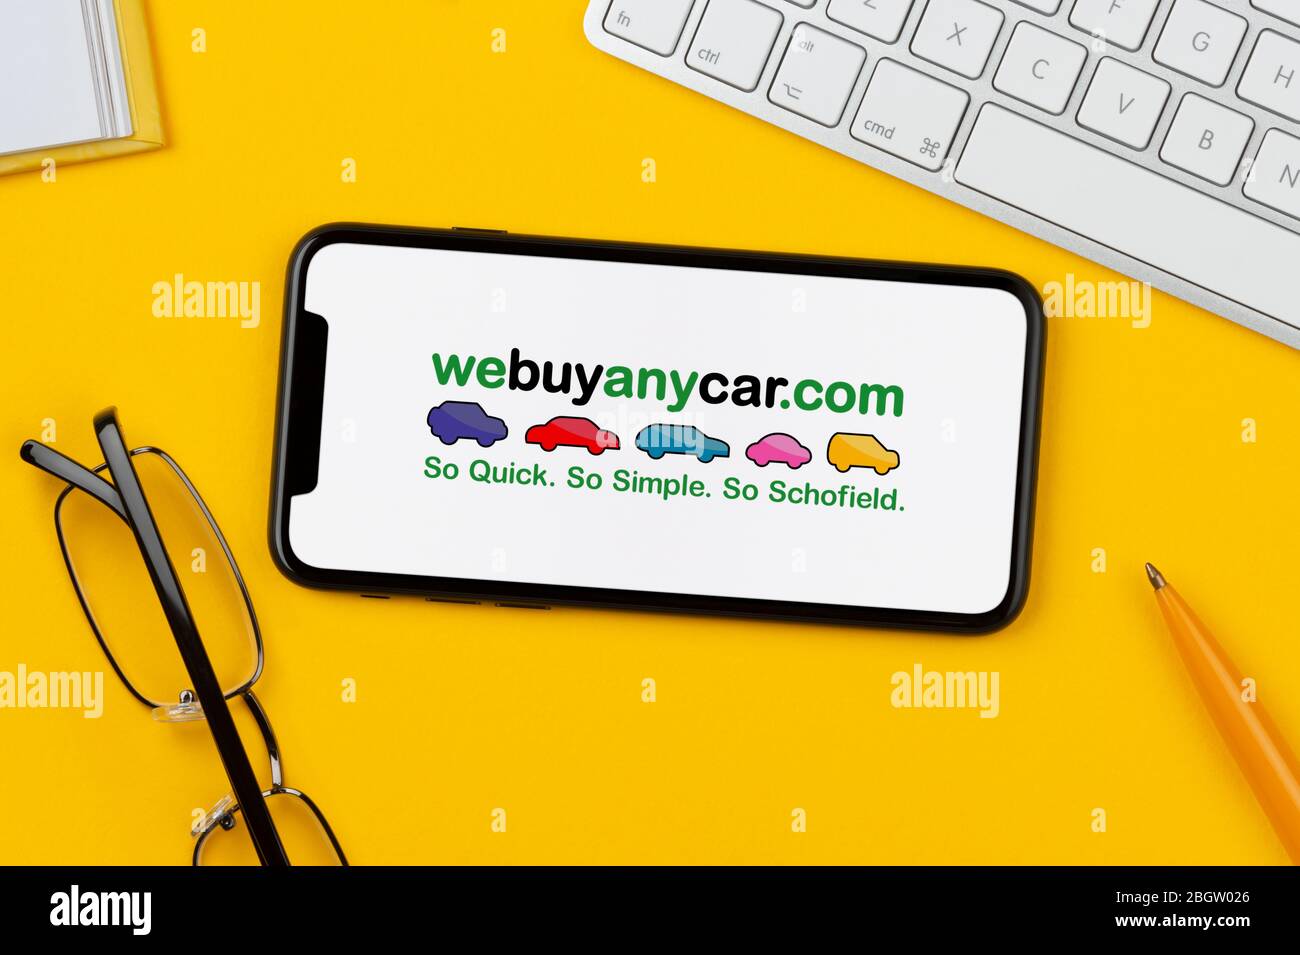 Uno smartphone con il logo webuyanycar è posizionato su uno sfondo giallo insieme a tastiera, occhiali, penna e libro (solo per uso editoriale). Foto Stock